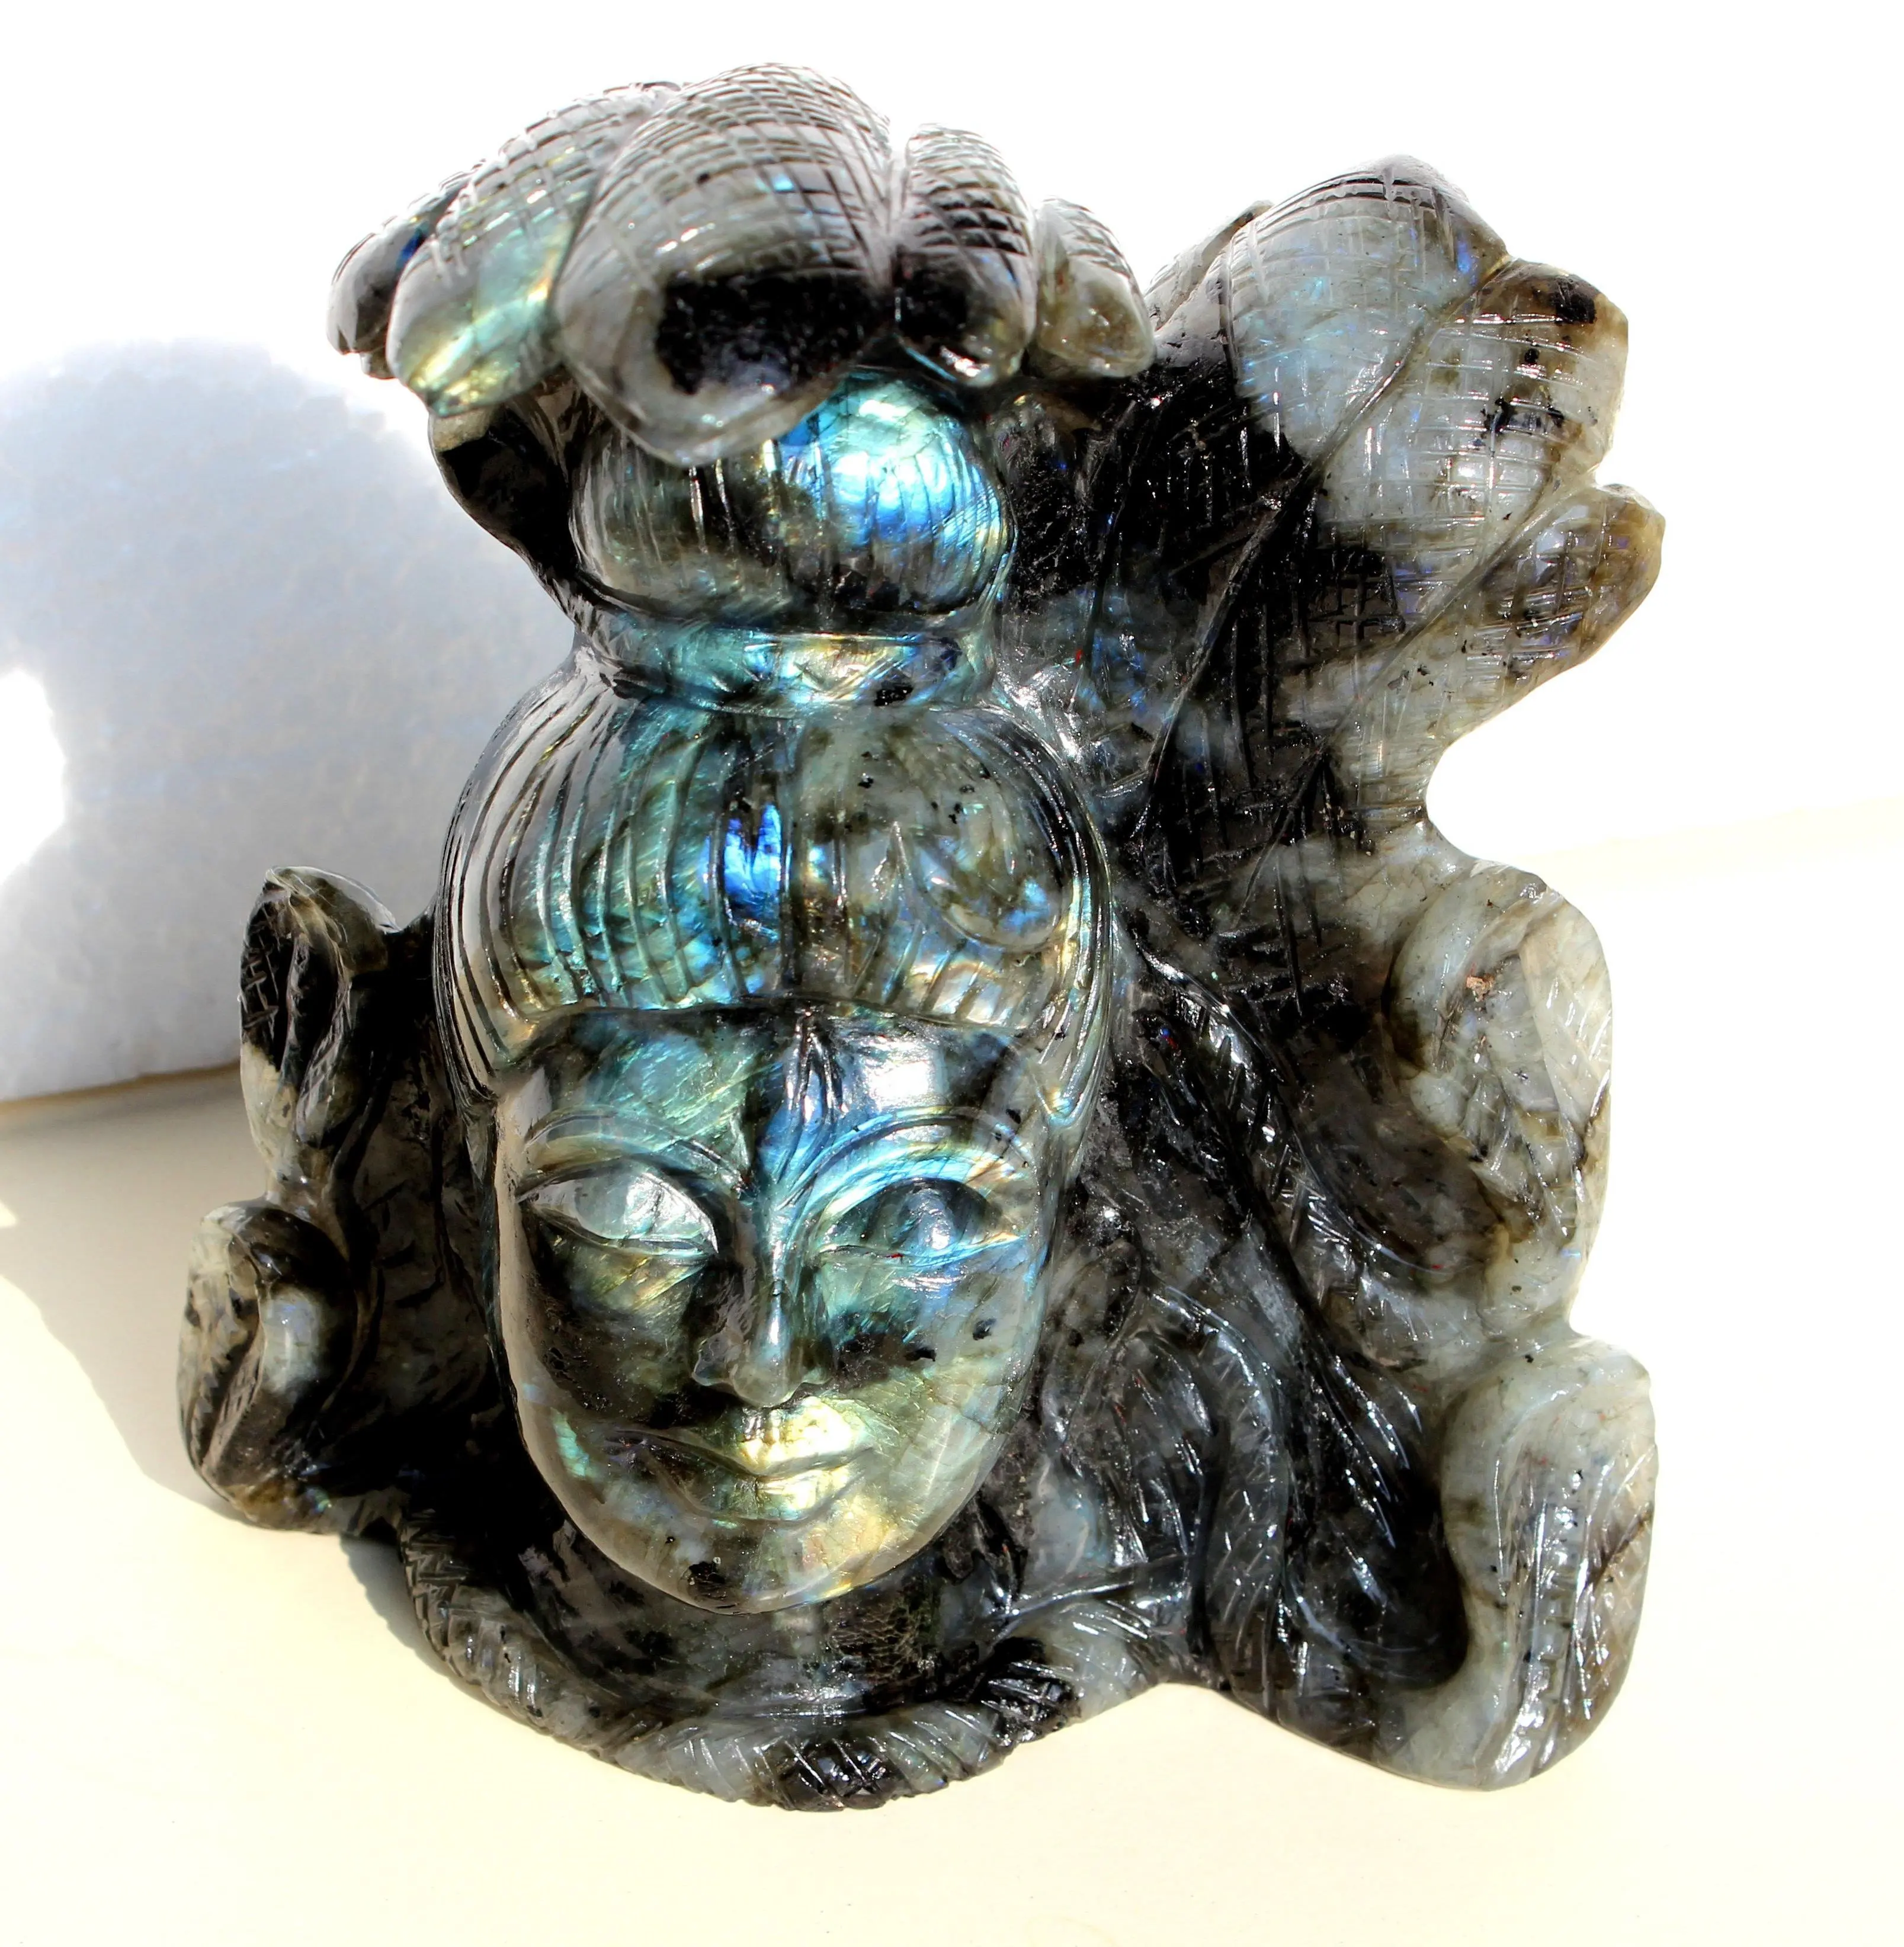 تمثال لابرادوريت, تمثال من اللابرادوريت منحوت يدويًا بأحجار كريمة طبيعية من الكريستالات